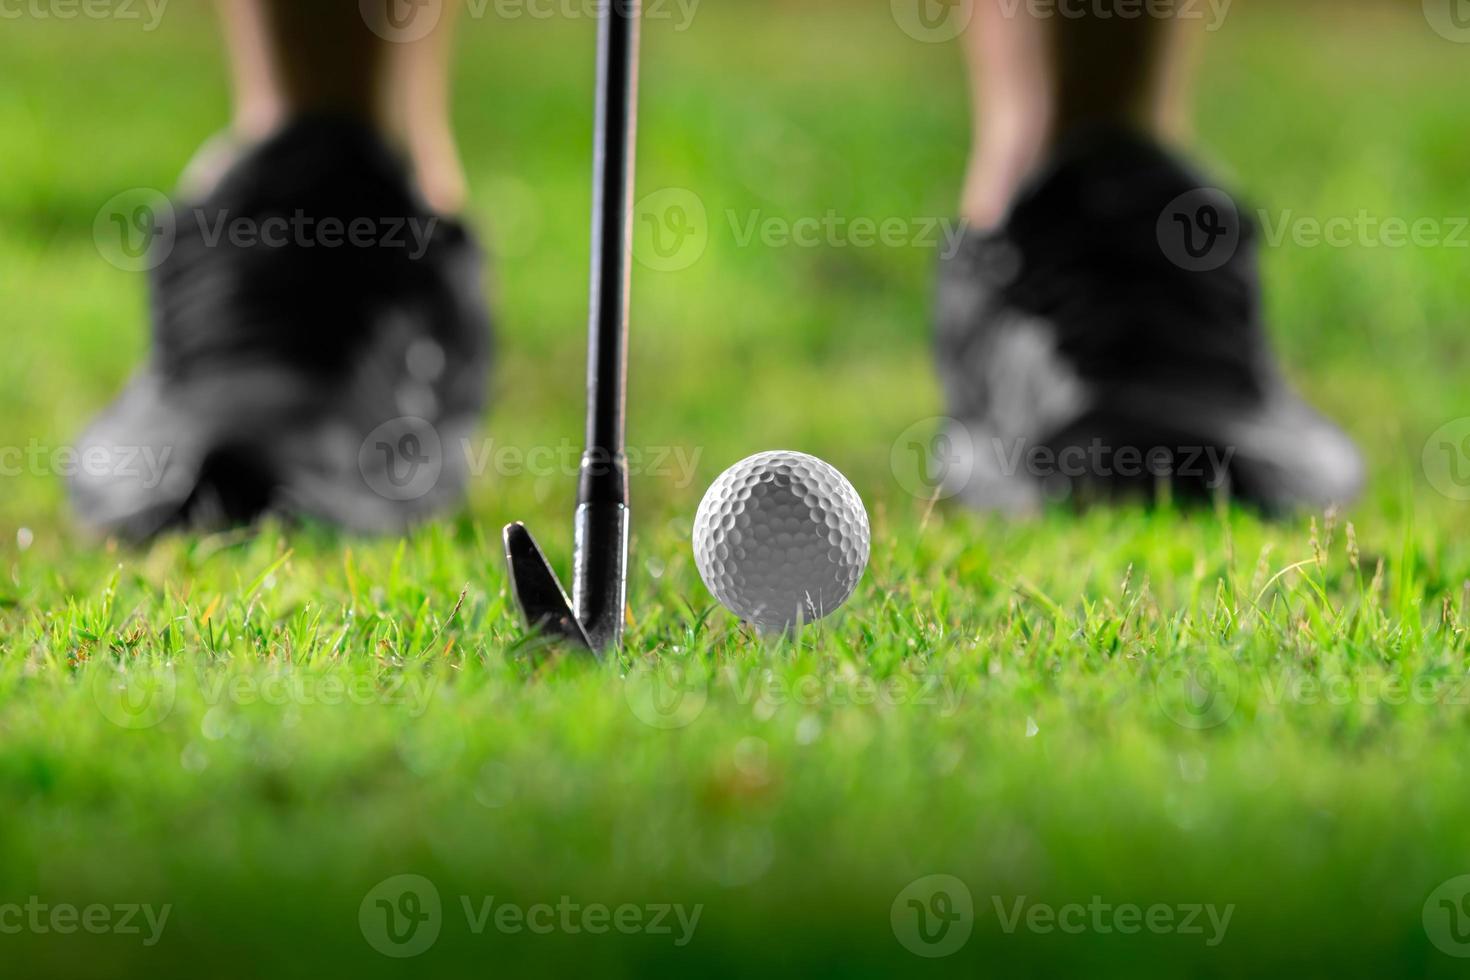 golfbal op tee in prachtig gras op golfbaan voor schot naar hole in one in competitie met ijzer 7 foto